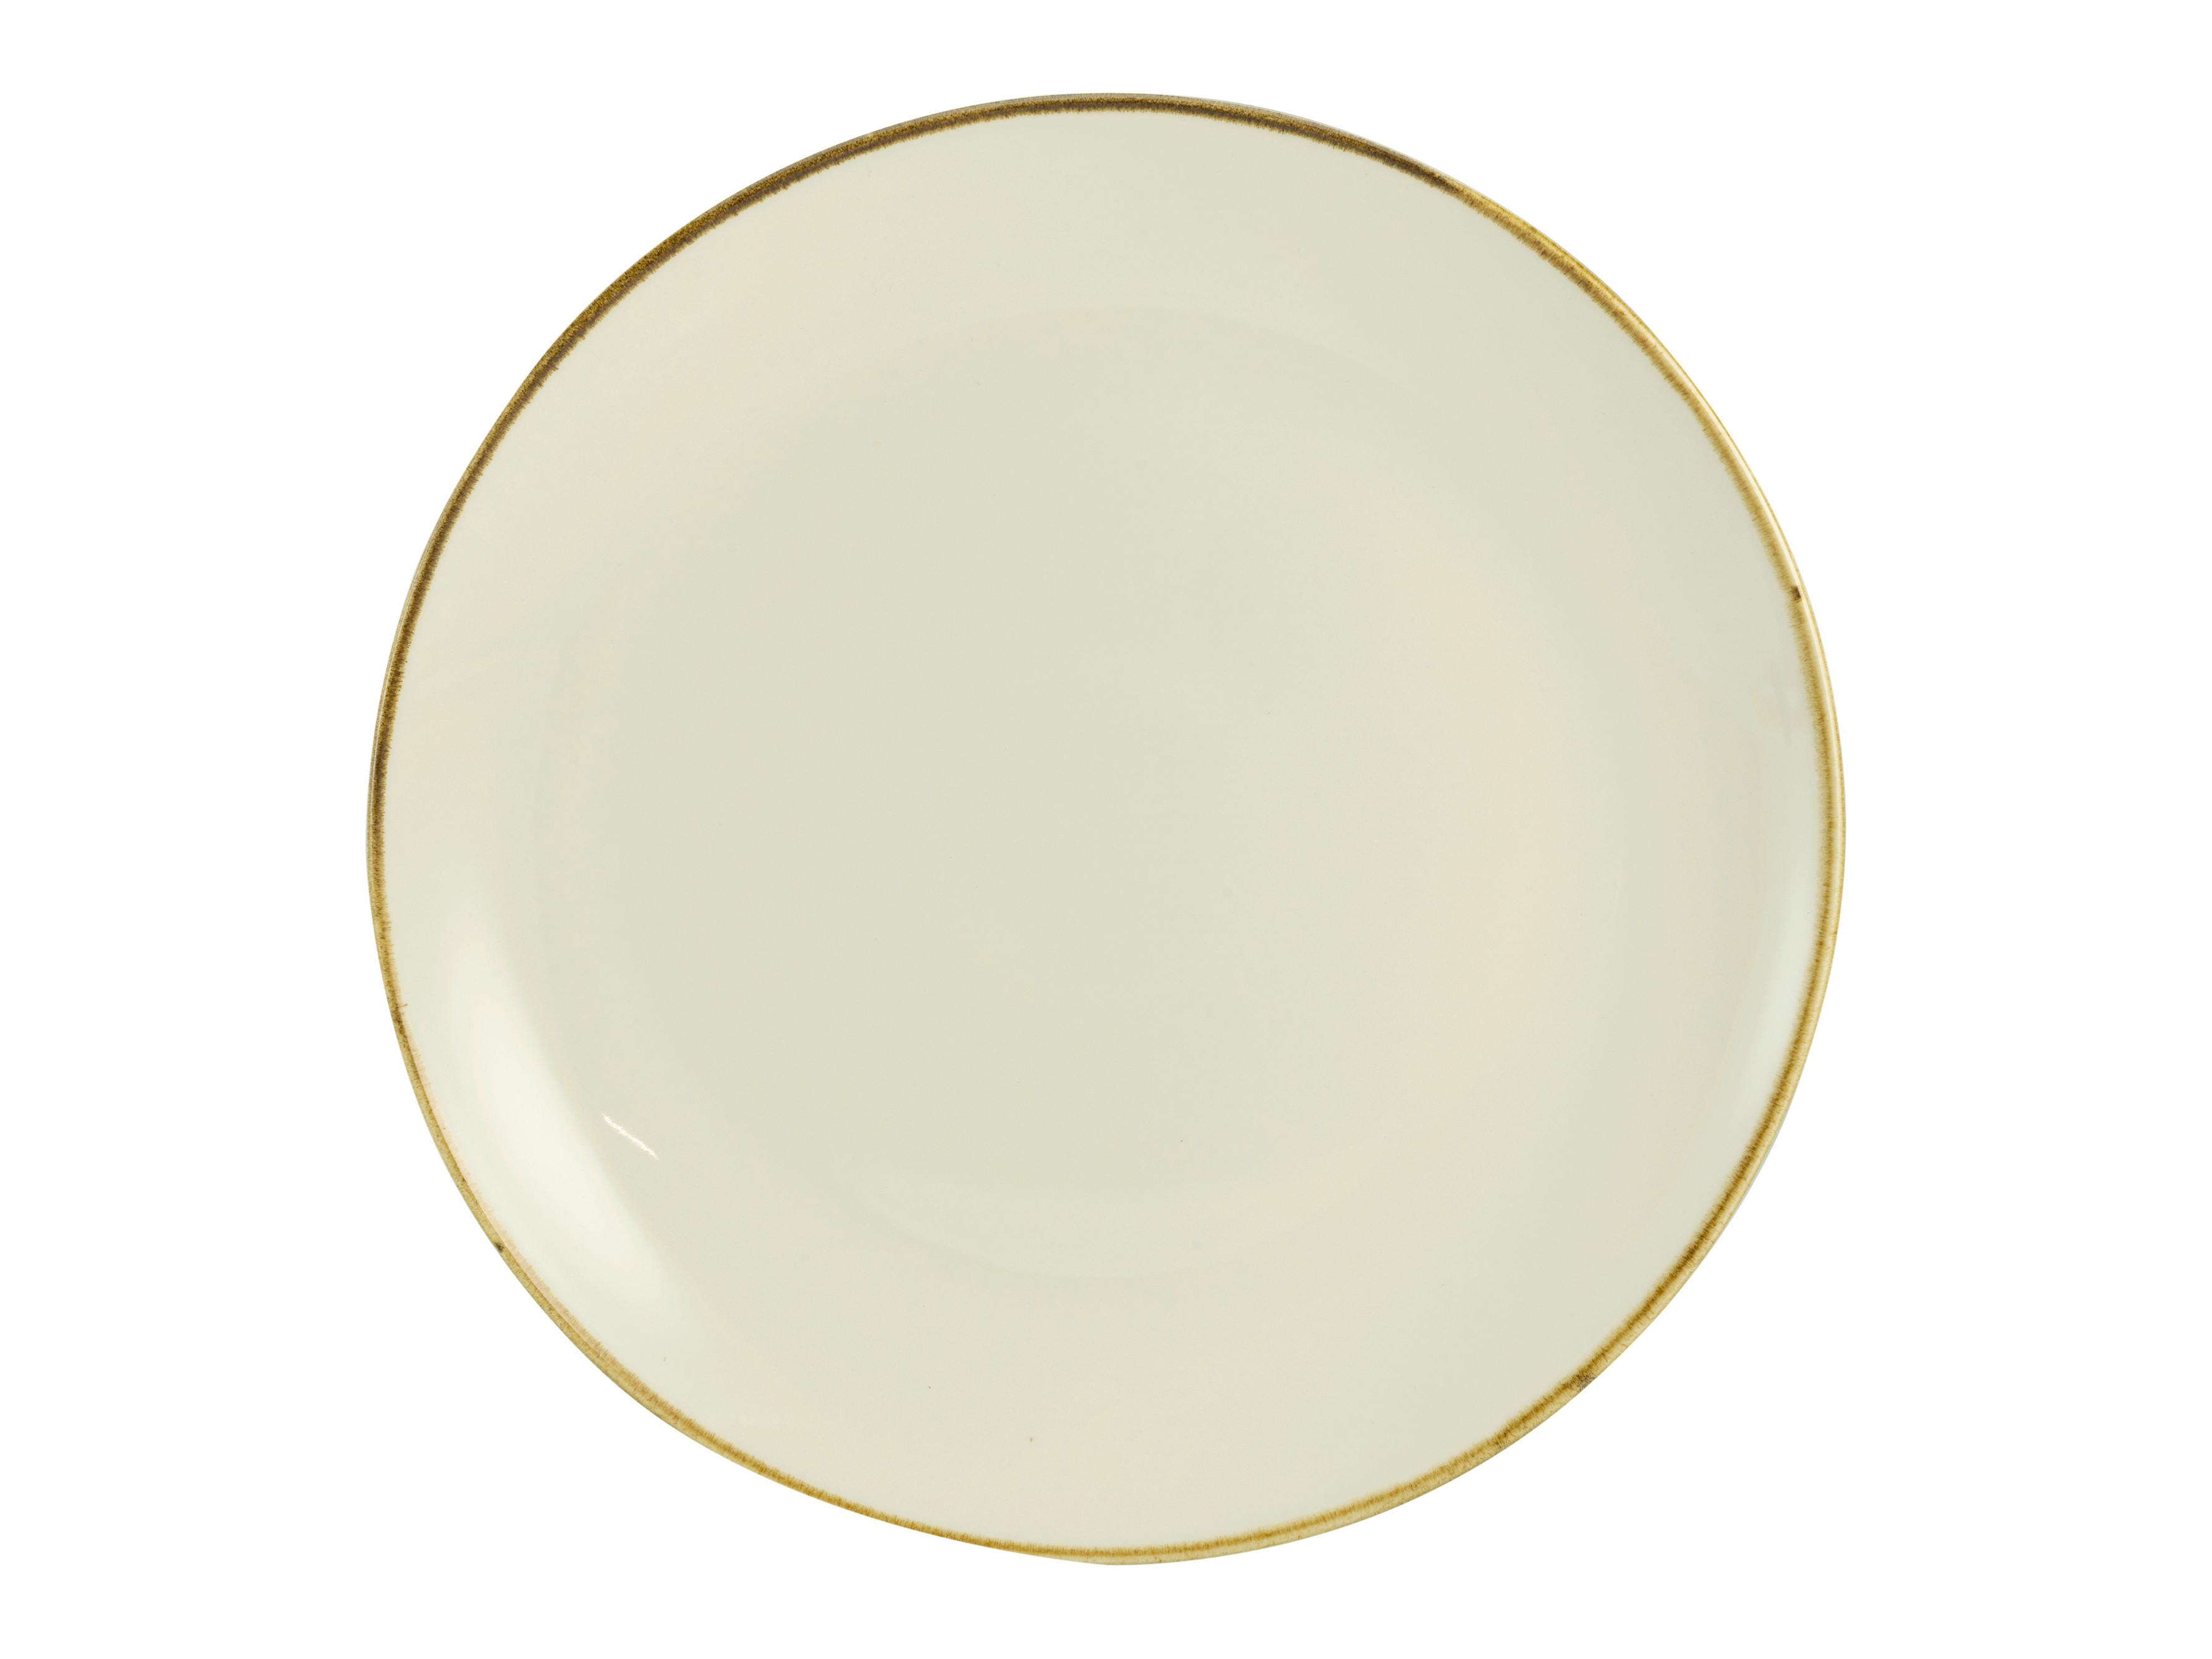 TALERZ OBIADOWY LINEN - kremowy/biały, ceramika (28/28/3cm) - Premium Living